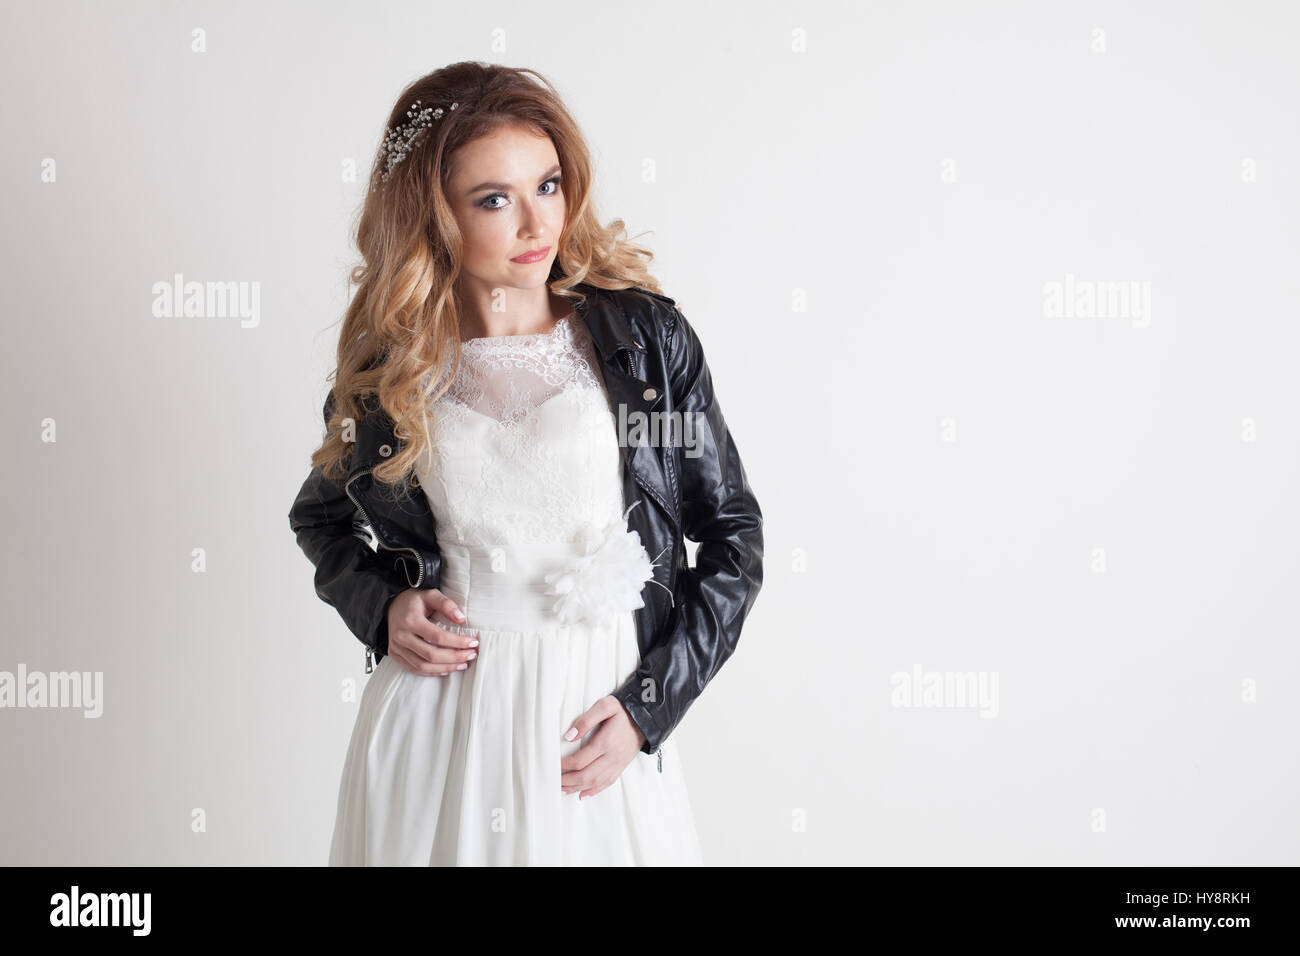 Braut Hochzeit Kleid Und Leder Jacke Stockfotografie Alamy